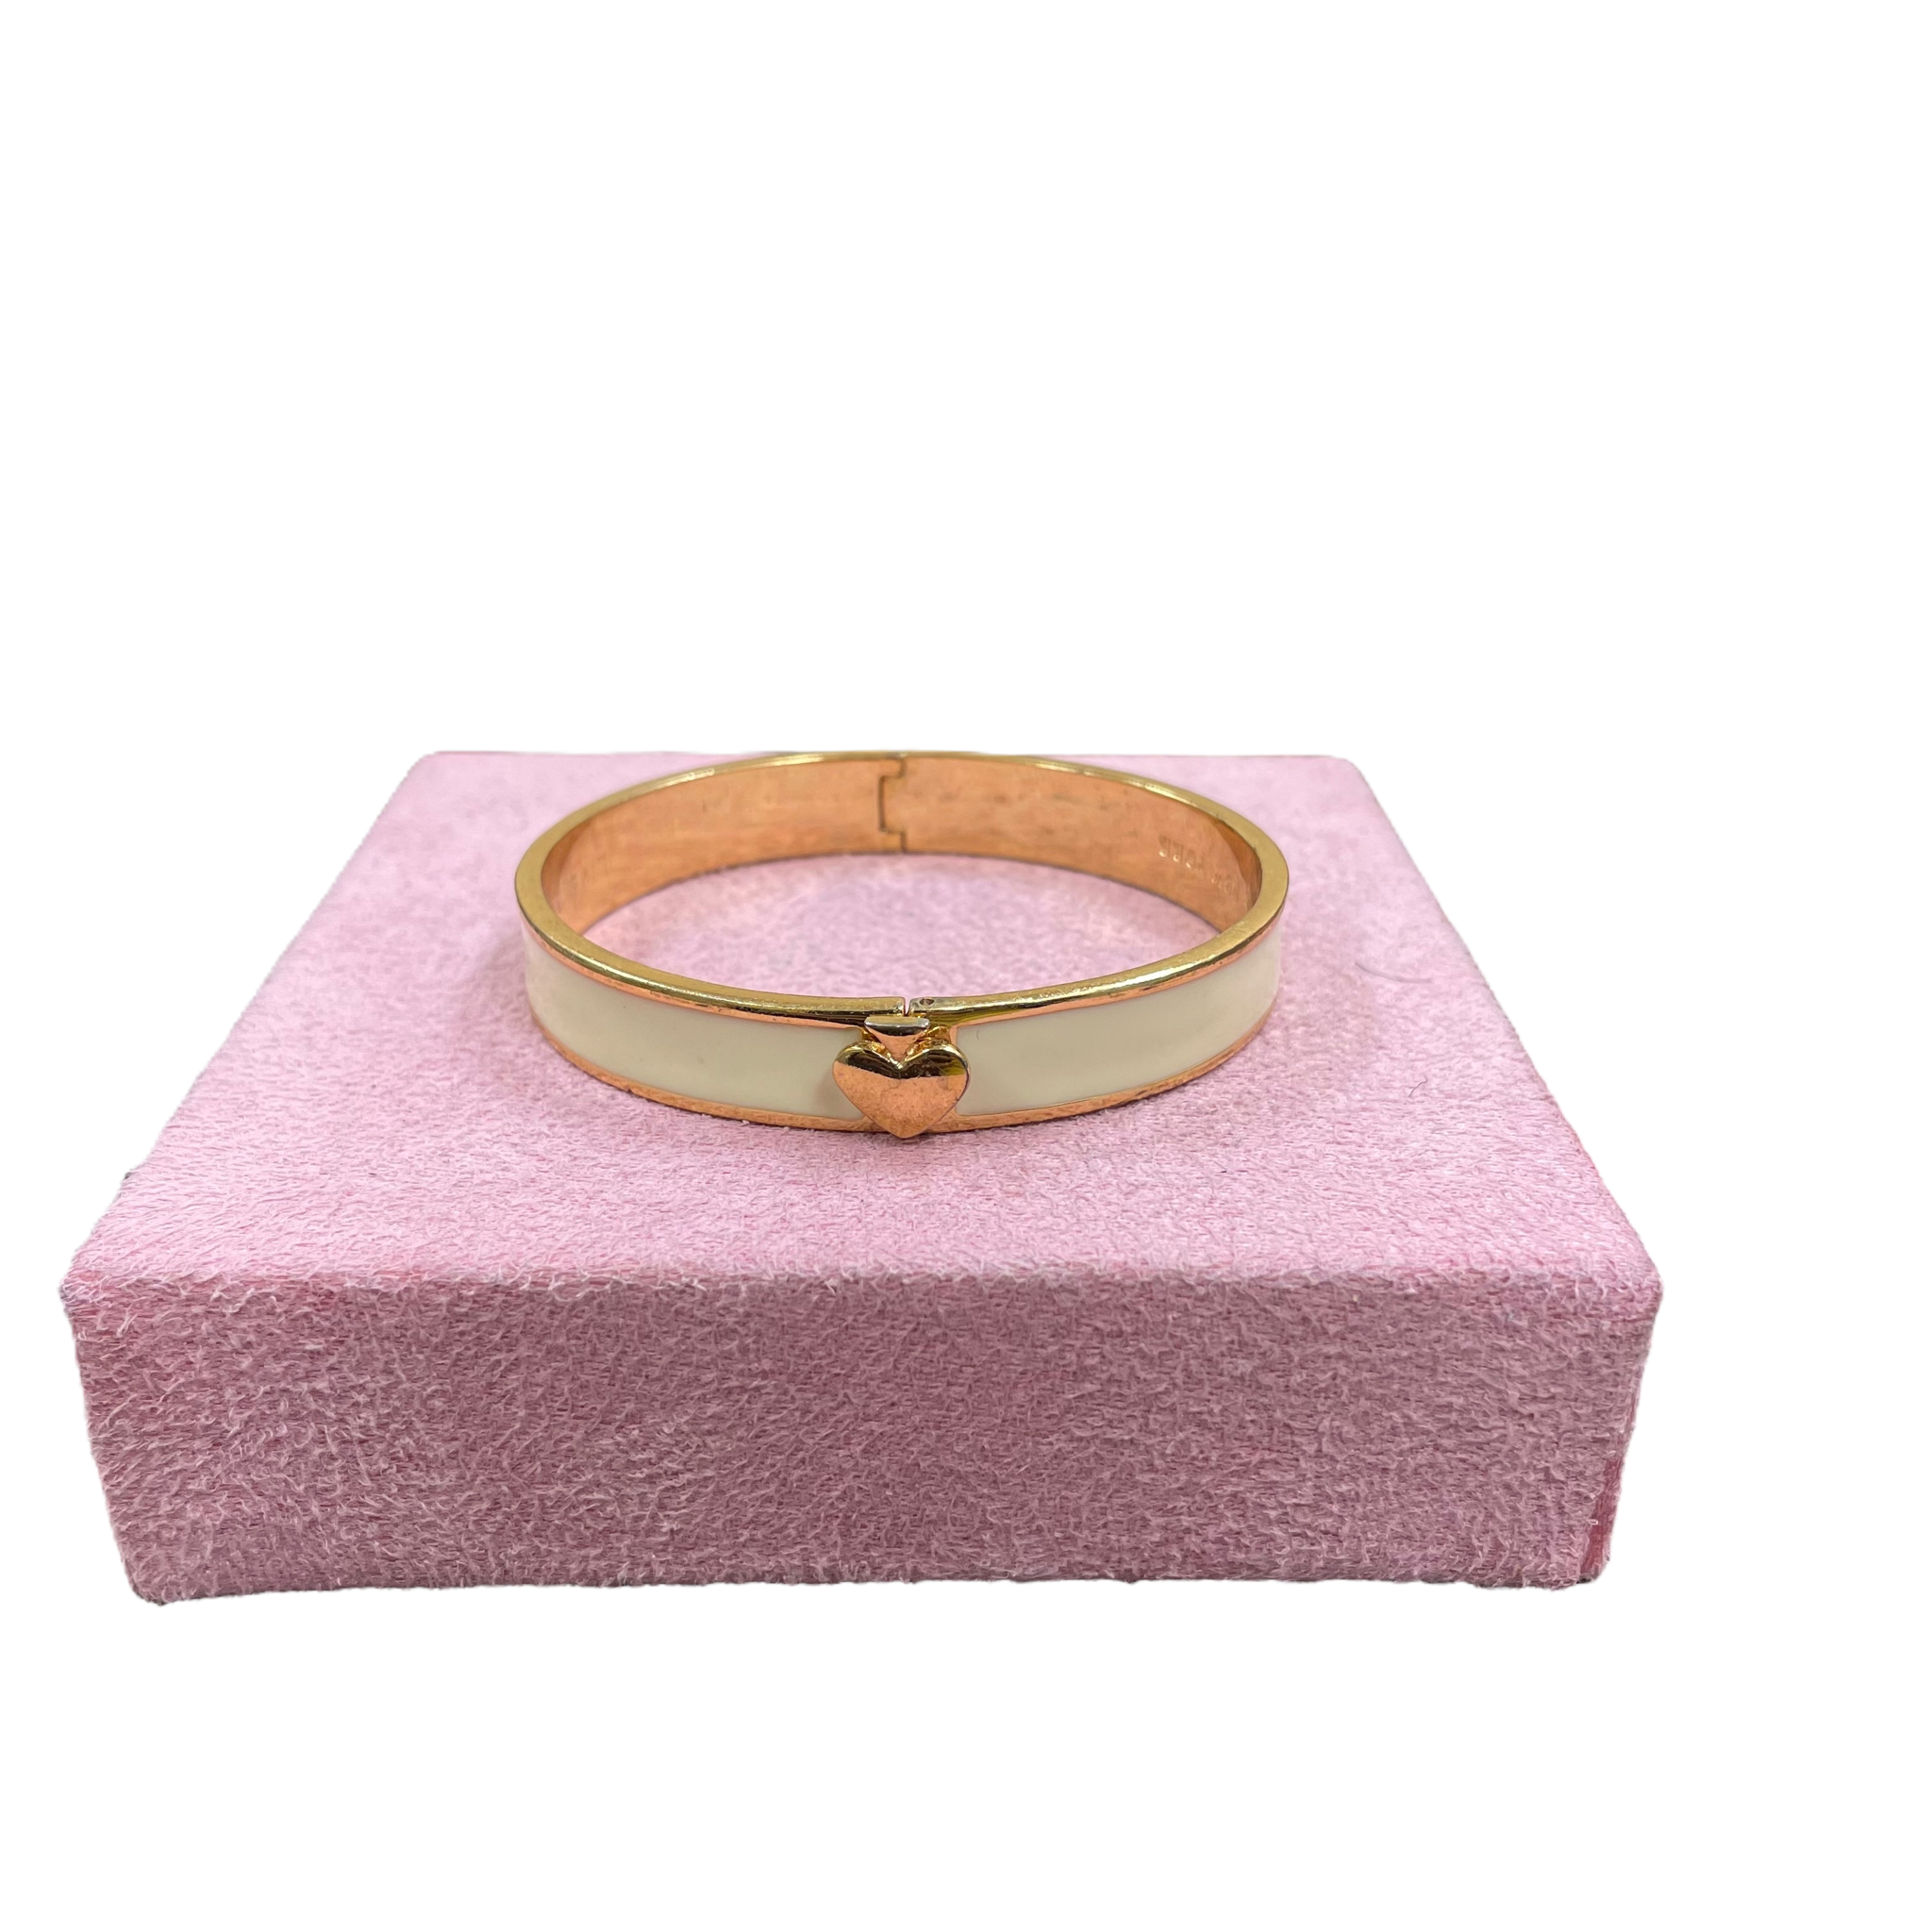 Kate Spade bracelet rose gold 🌹 Brand: Kate Spade... - Depop